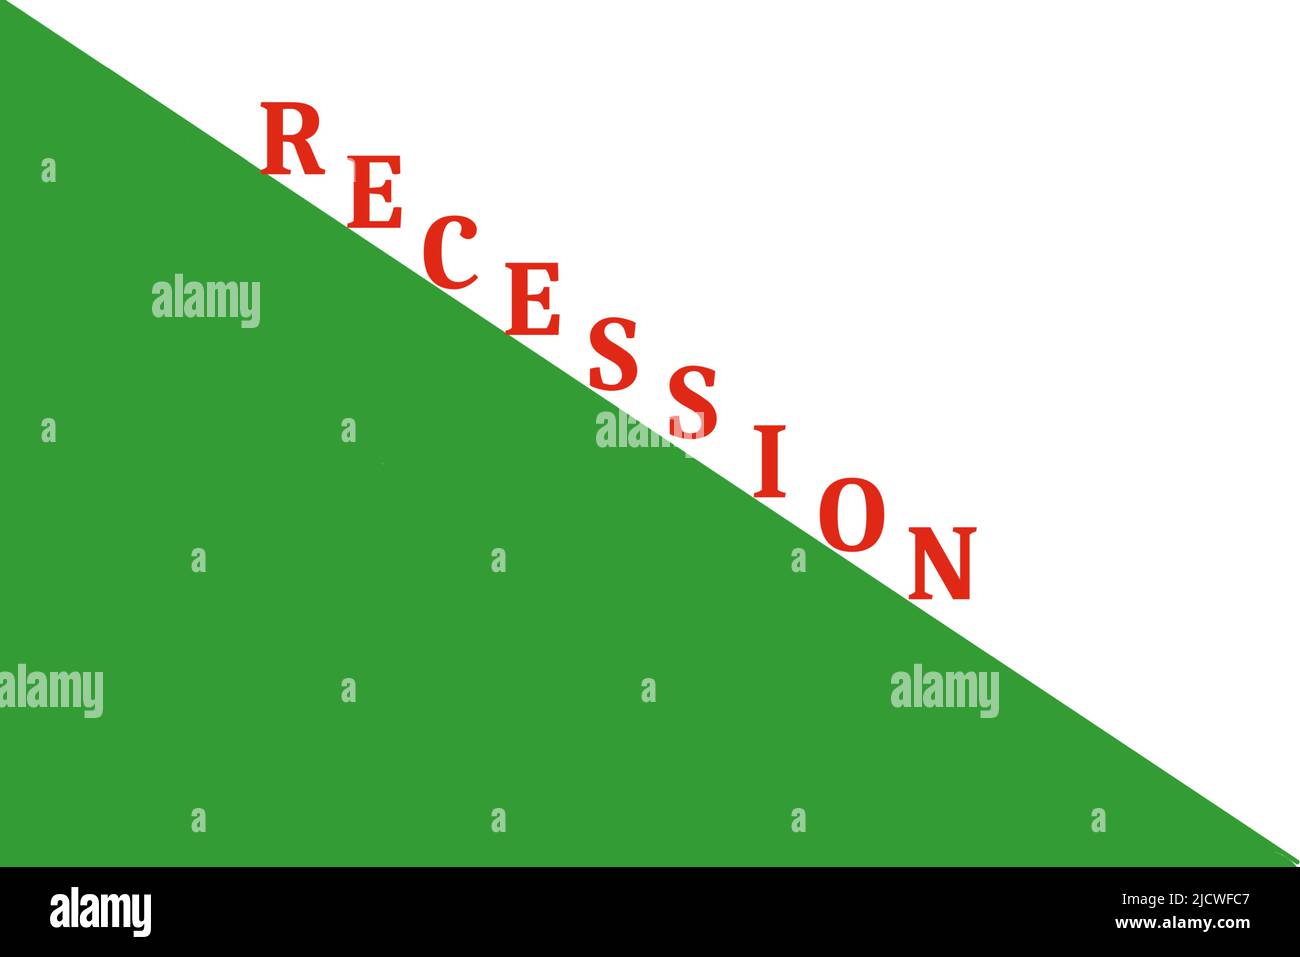 Gráfico de recesión. La palabra recesión en rojo encima de un triángulo verde se desplega hacia abajo Foto de stock